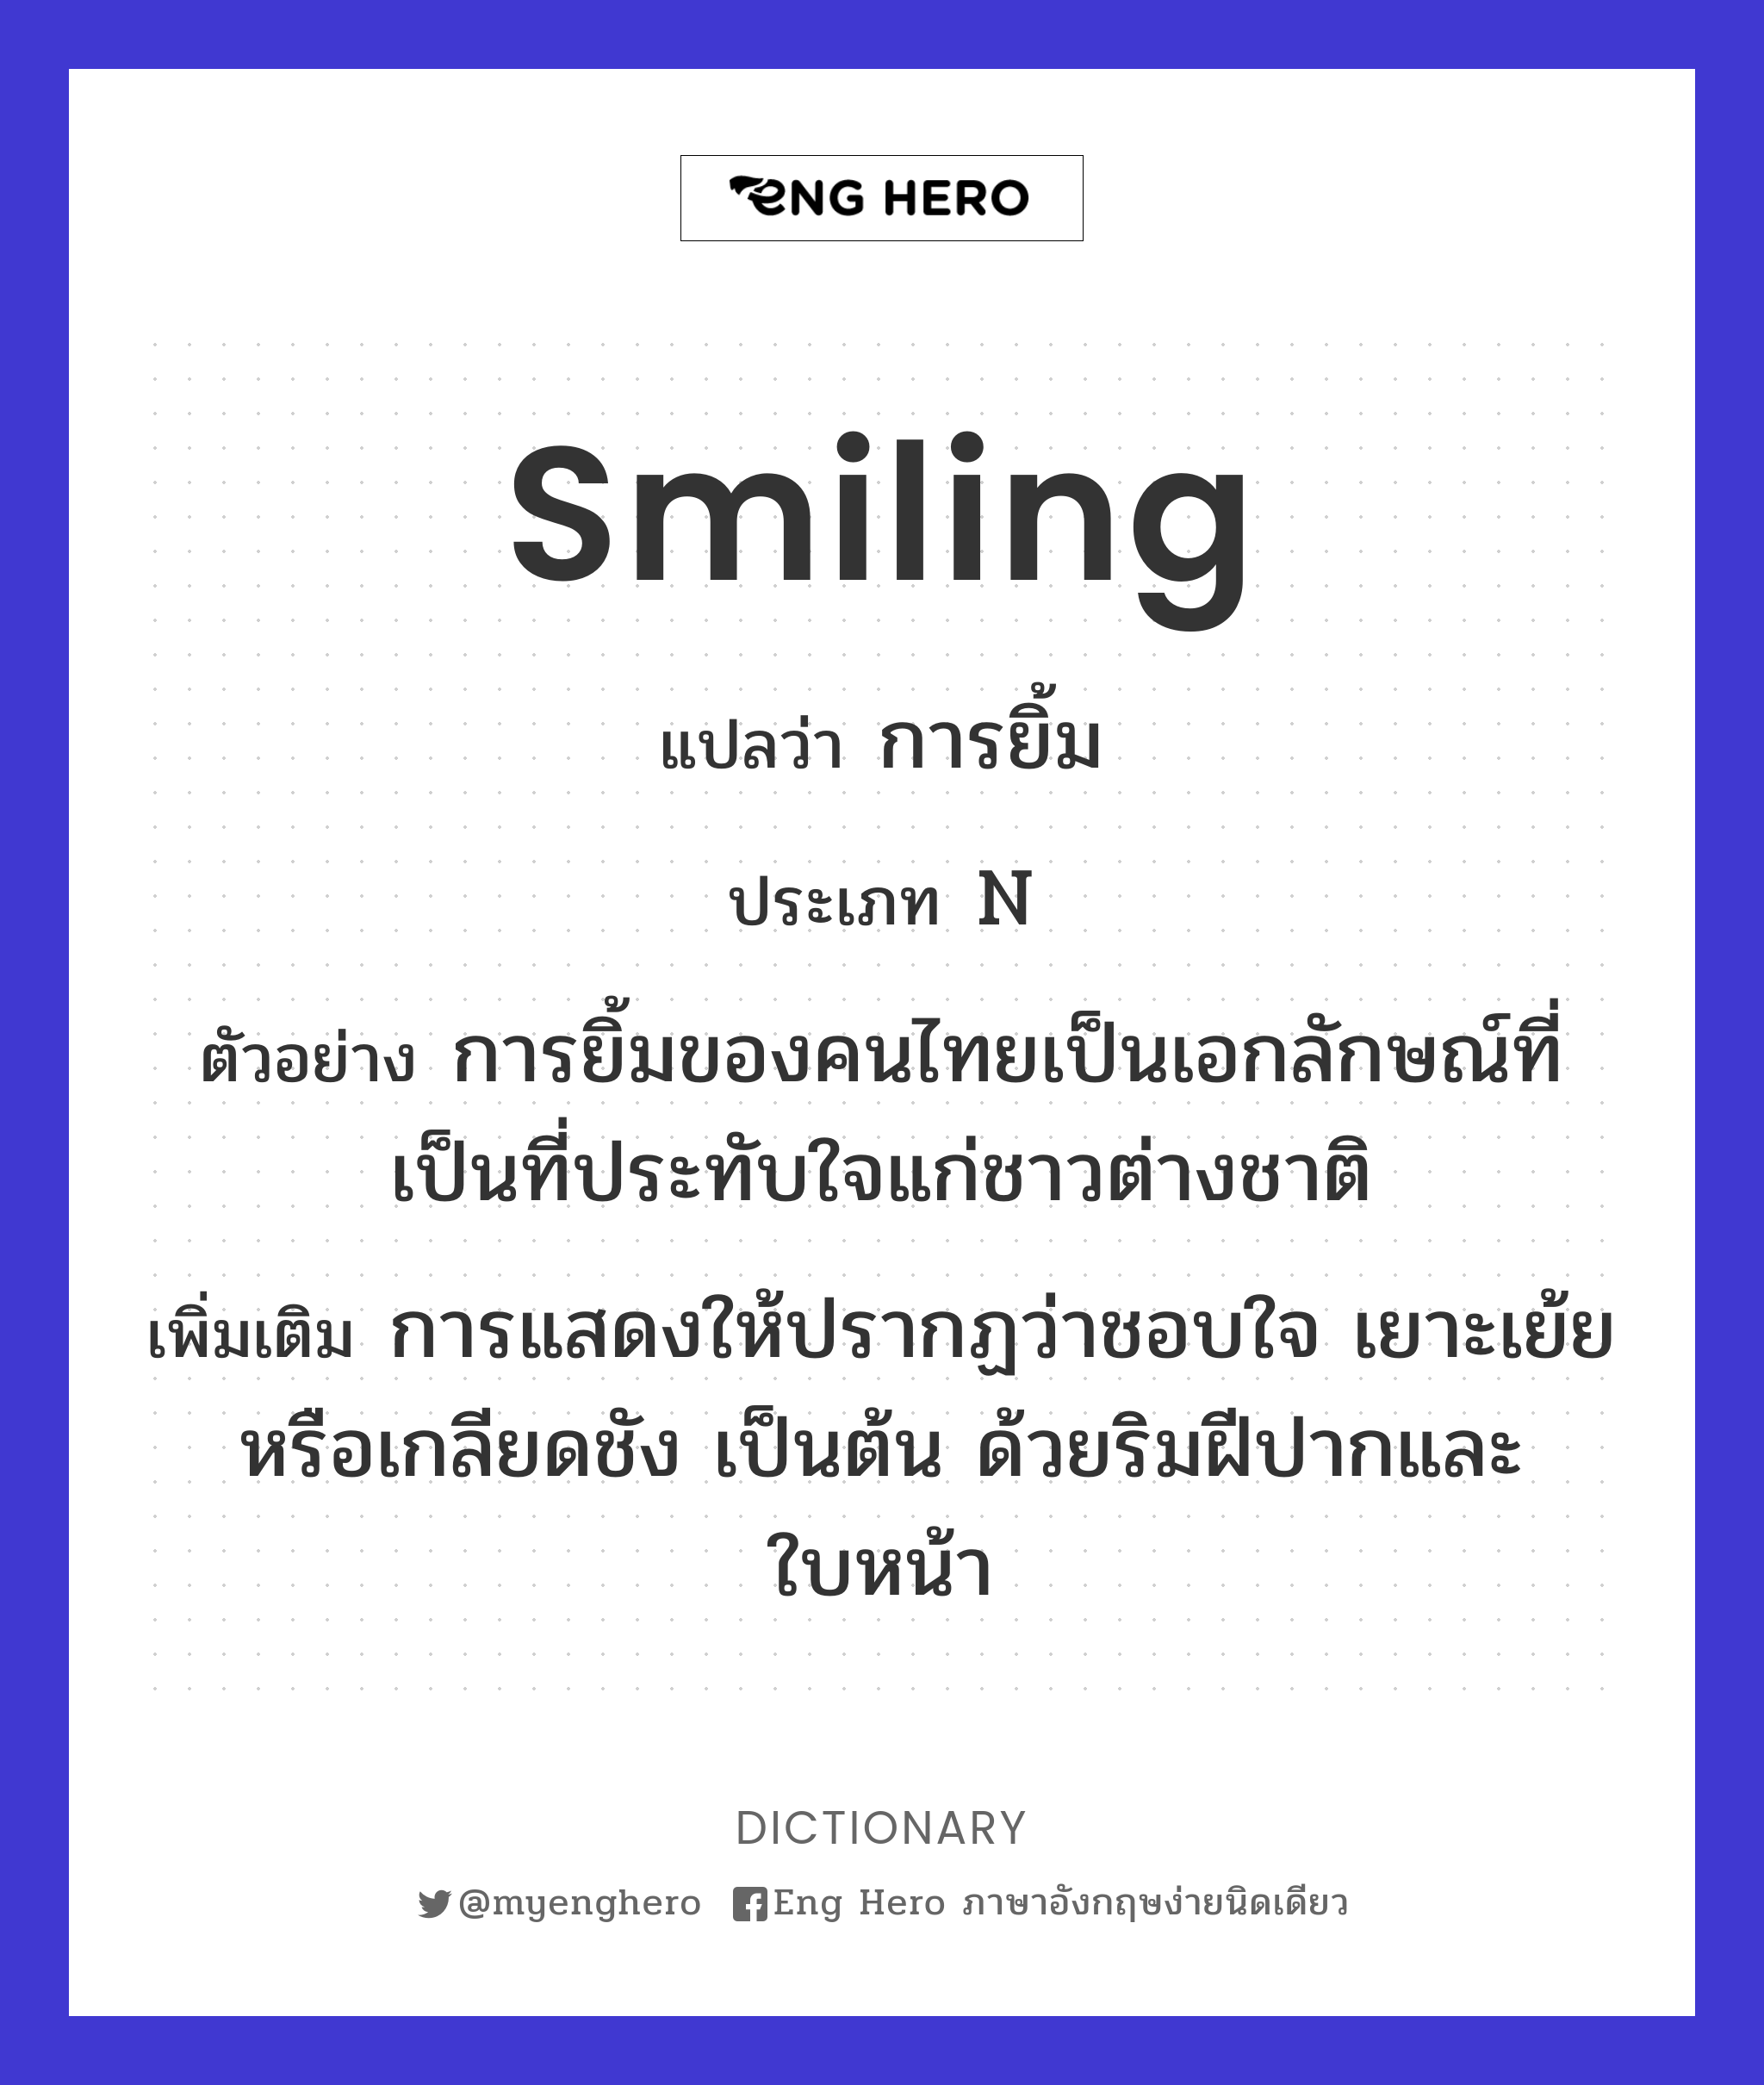 smiling